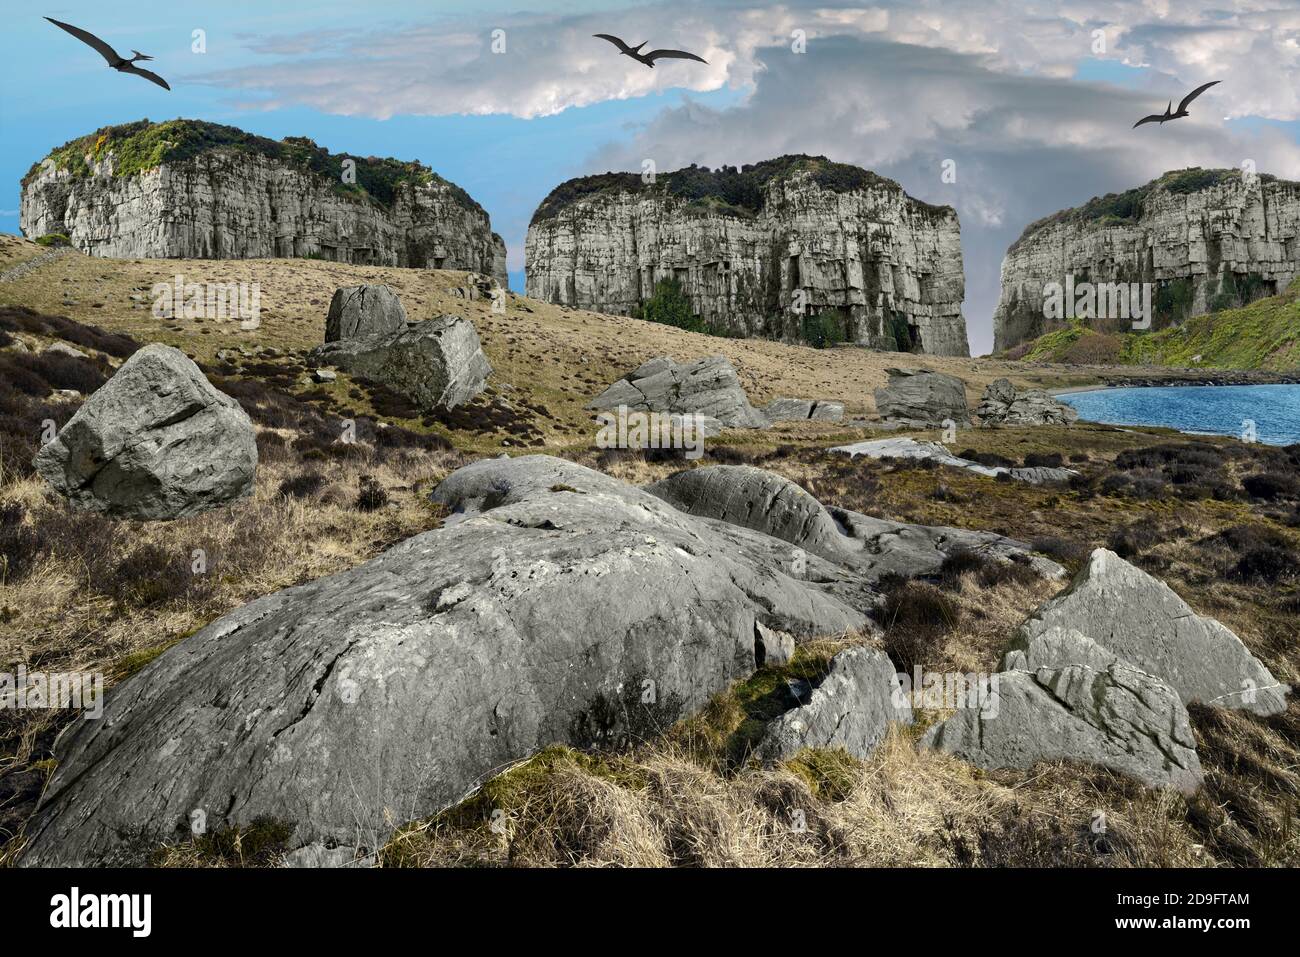 Une vision fantaisiste de la période jurassique avec des ptérodactyles géants survolant d'étranges montagnes de table. Il comprend Castle Rock, Anglesey et Snowdonia. Banque D'Images